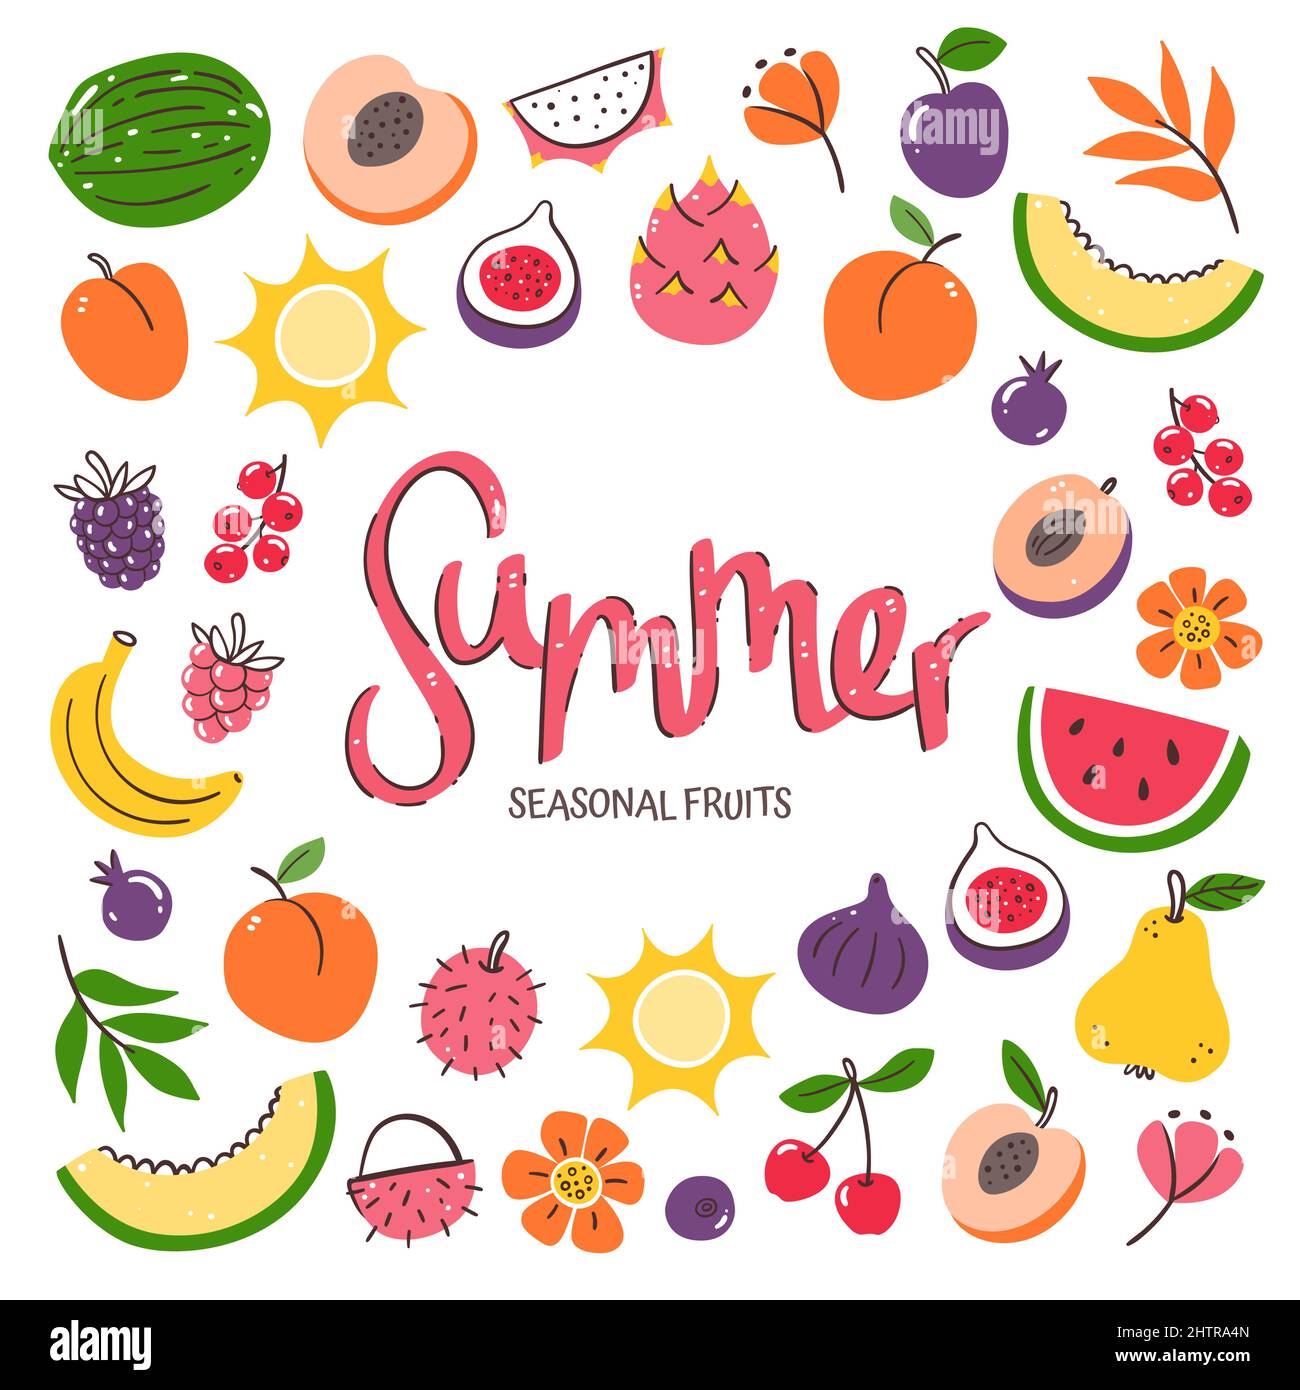 Frutta di stagione di fondo. Composizione di frutta estiva composta da icone vettoriali colorate disegnate a mano, isolate su sfondo bianco. Illustrazione Vettoriale